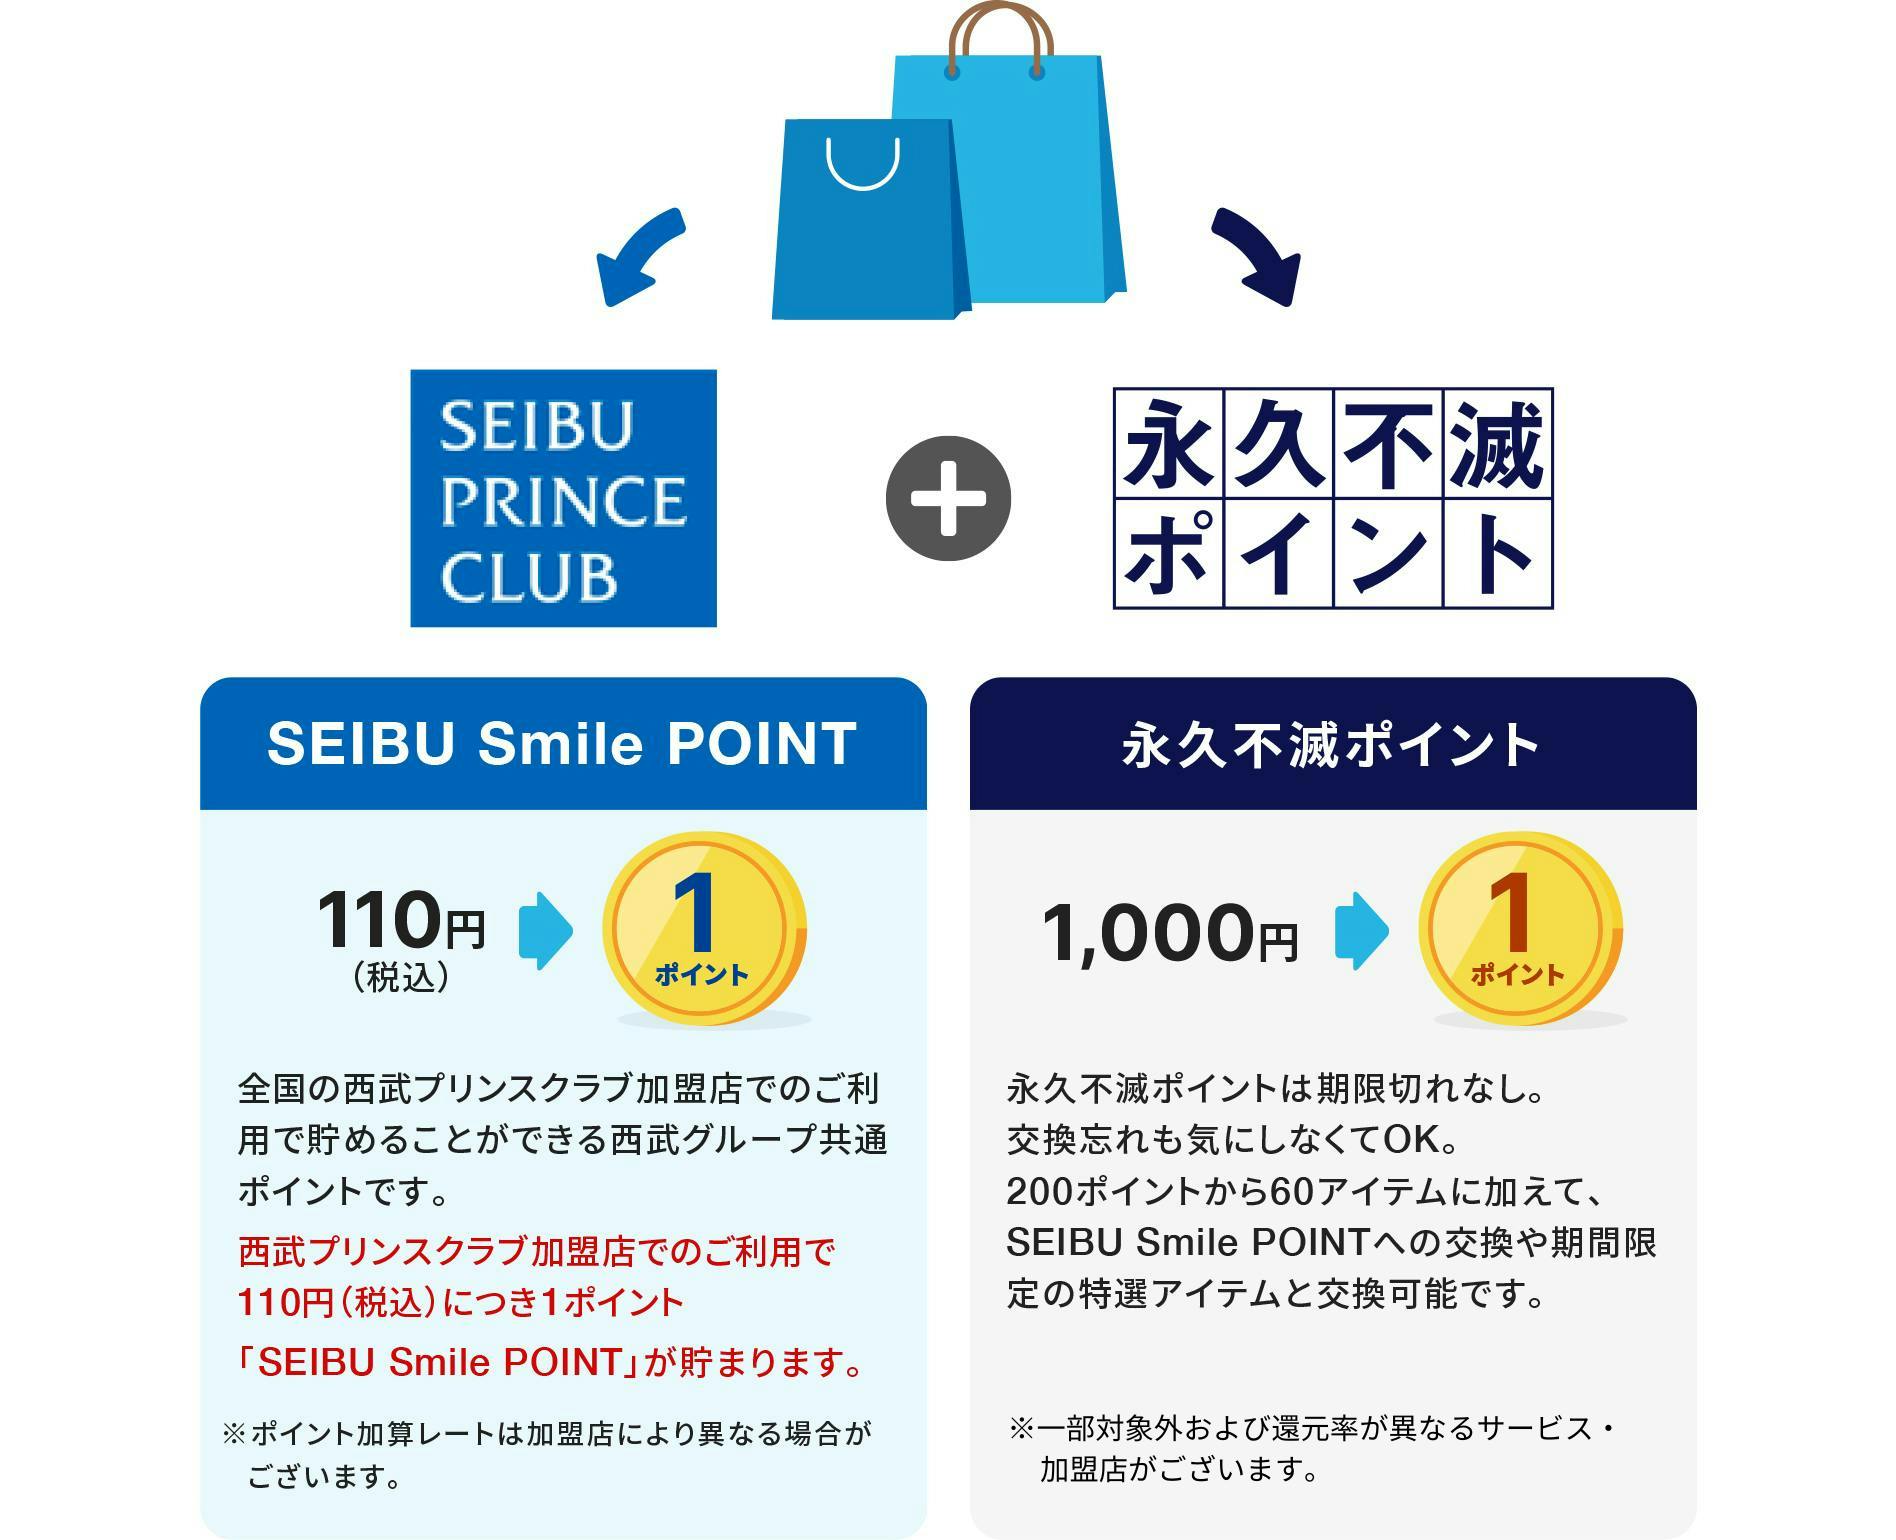 SEIBU Smile POINT　110円（税込）で1ポイント　全国の西武プリンスクラブ加盟店でのご利用で貯めることができる西武グループ共通ポイントです。西武プリンスクラブ加盟店でのご利用で110円（税込）につき1ポイント「SEIBU Smile POINT」が貯まります。※ポイント加算レートは加盟店により異なる場合がございます。　永久不滅ポイント　1000円で1ポイント　永久不滅ポイントは期限切れなし。交換忘れも気にしなくてOK。200ポイントから60アイテムに加えて、SEIBU Smile POINTへの交換や期間限定の特選アイテムと交換可能です。